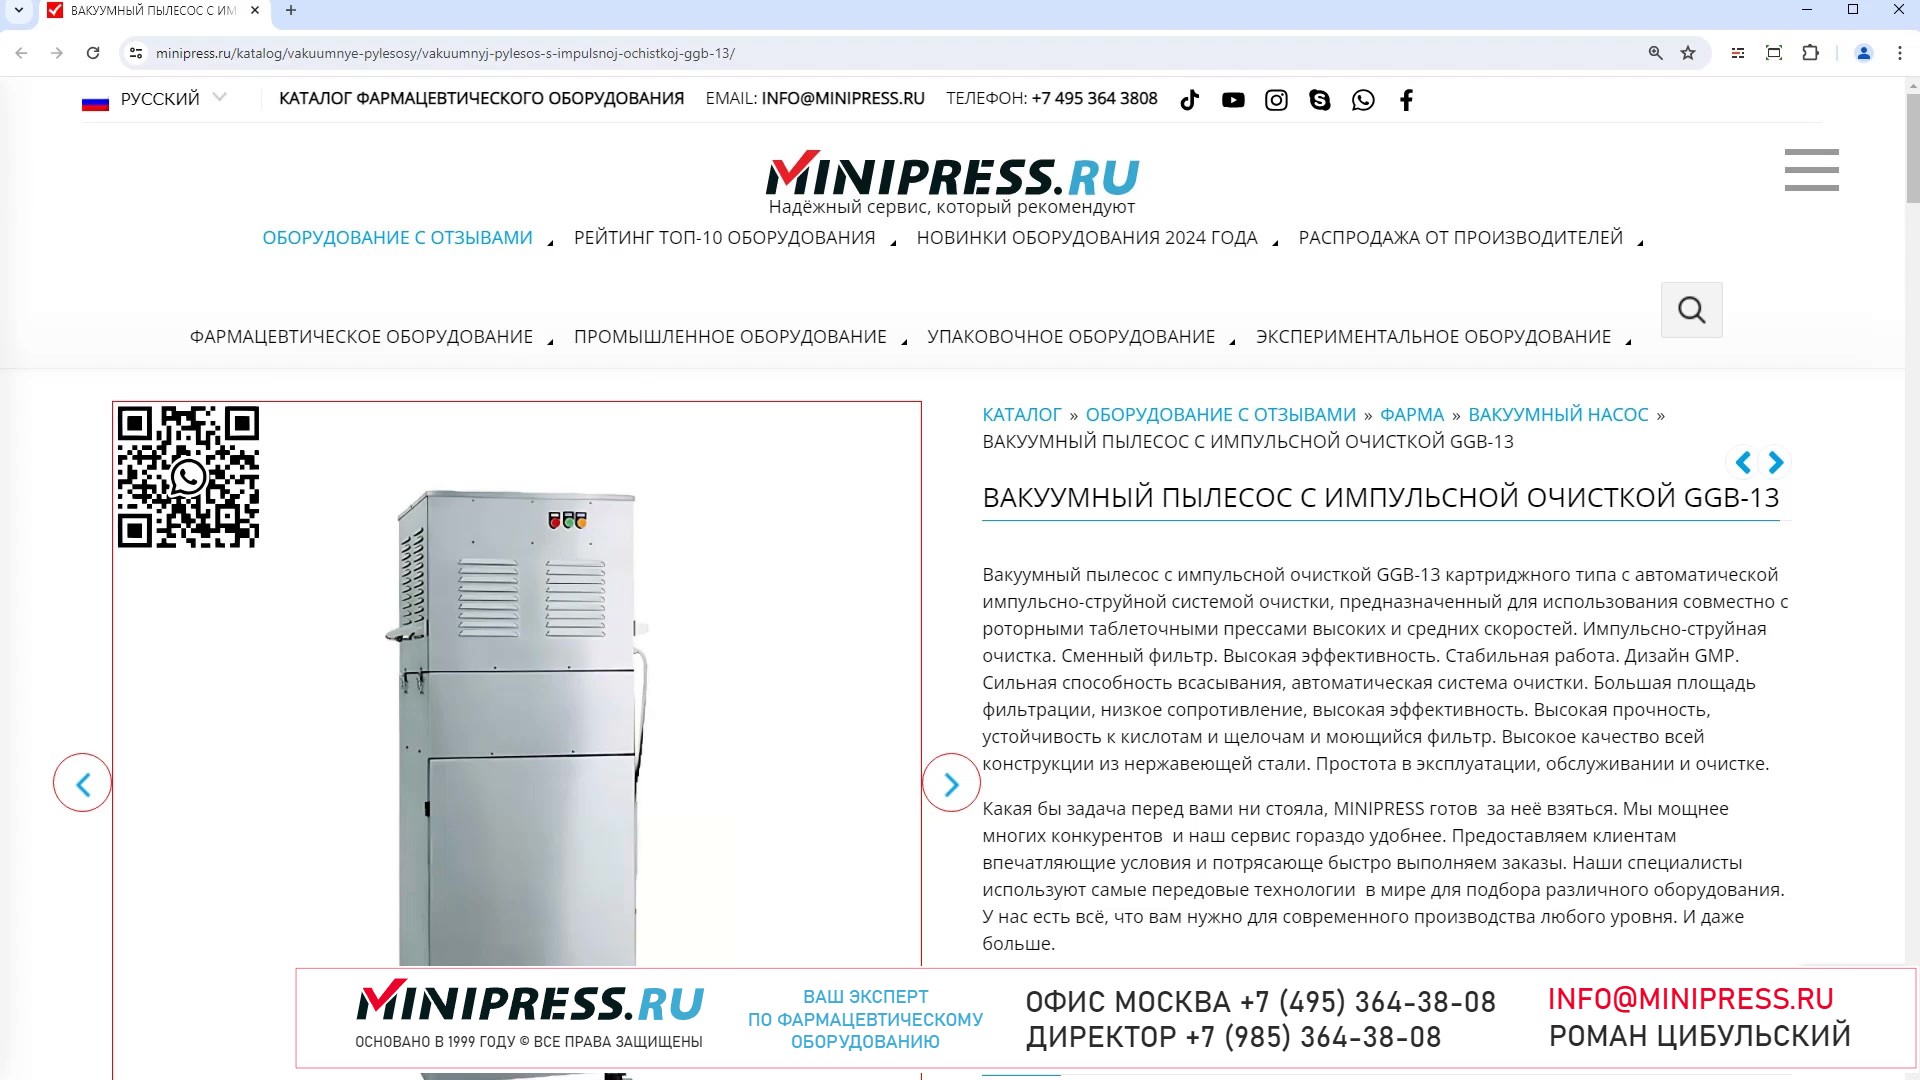 Minipress.ru Вакуумный пылесос с импульсной очисткой GGB-13